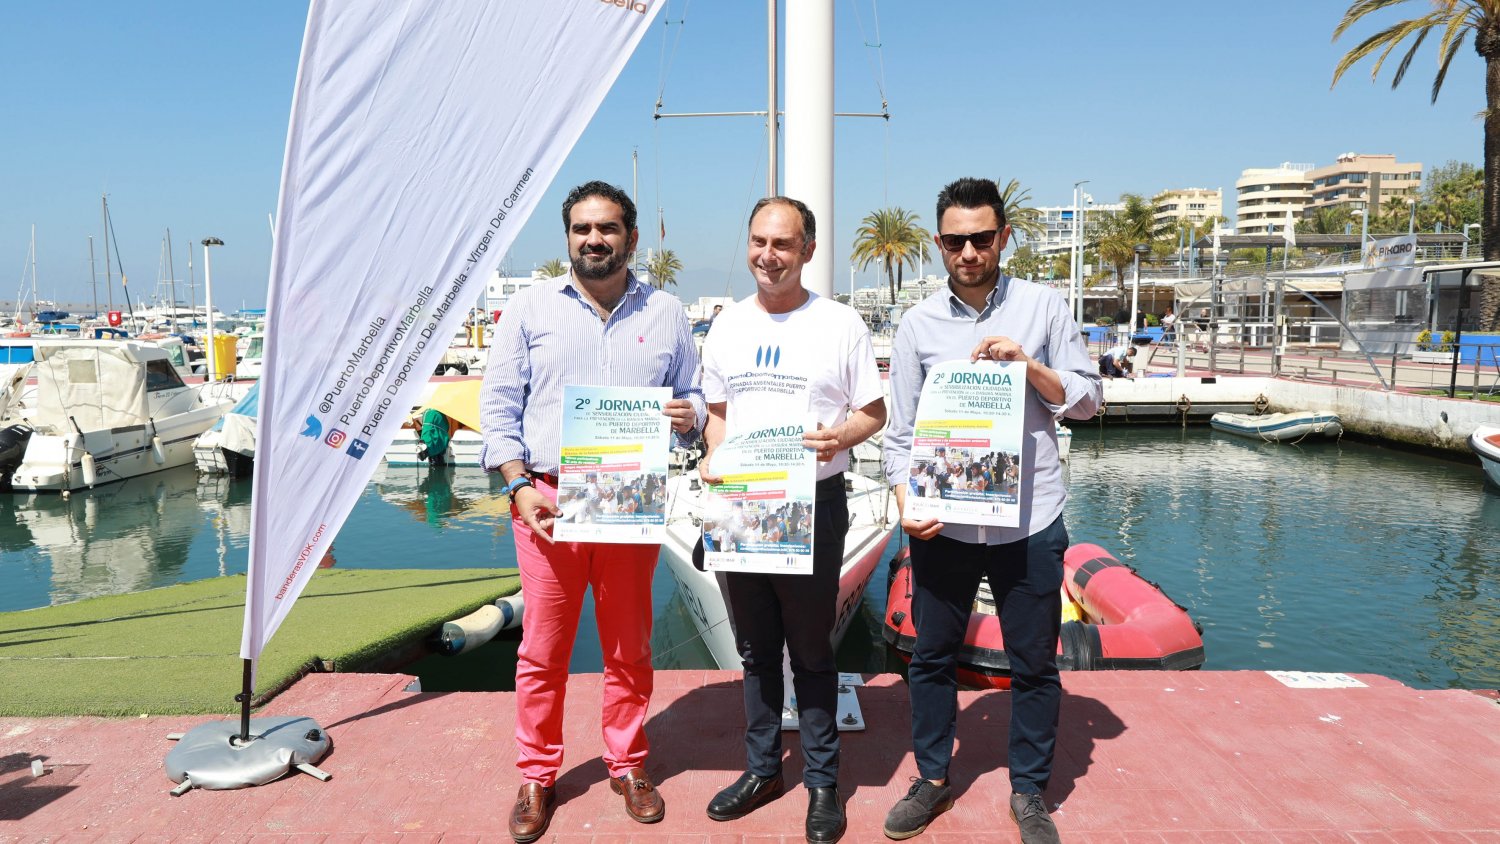 El Puerto Deportivo de Marbella acoge una jornada para sensibilizar sobre el cuidado del medioambiente marino